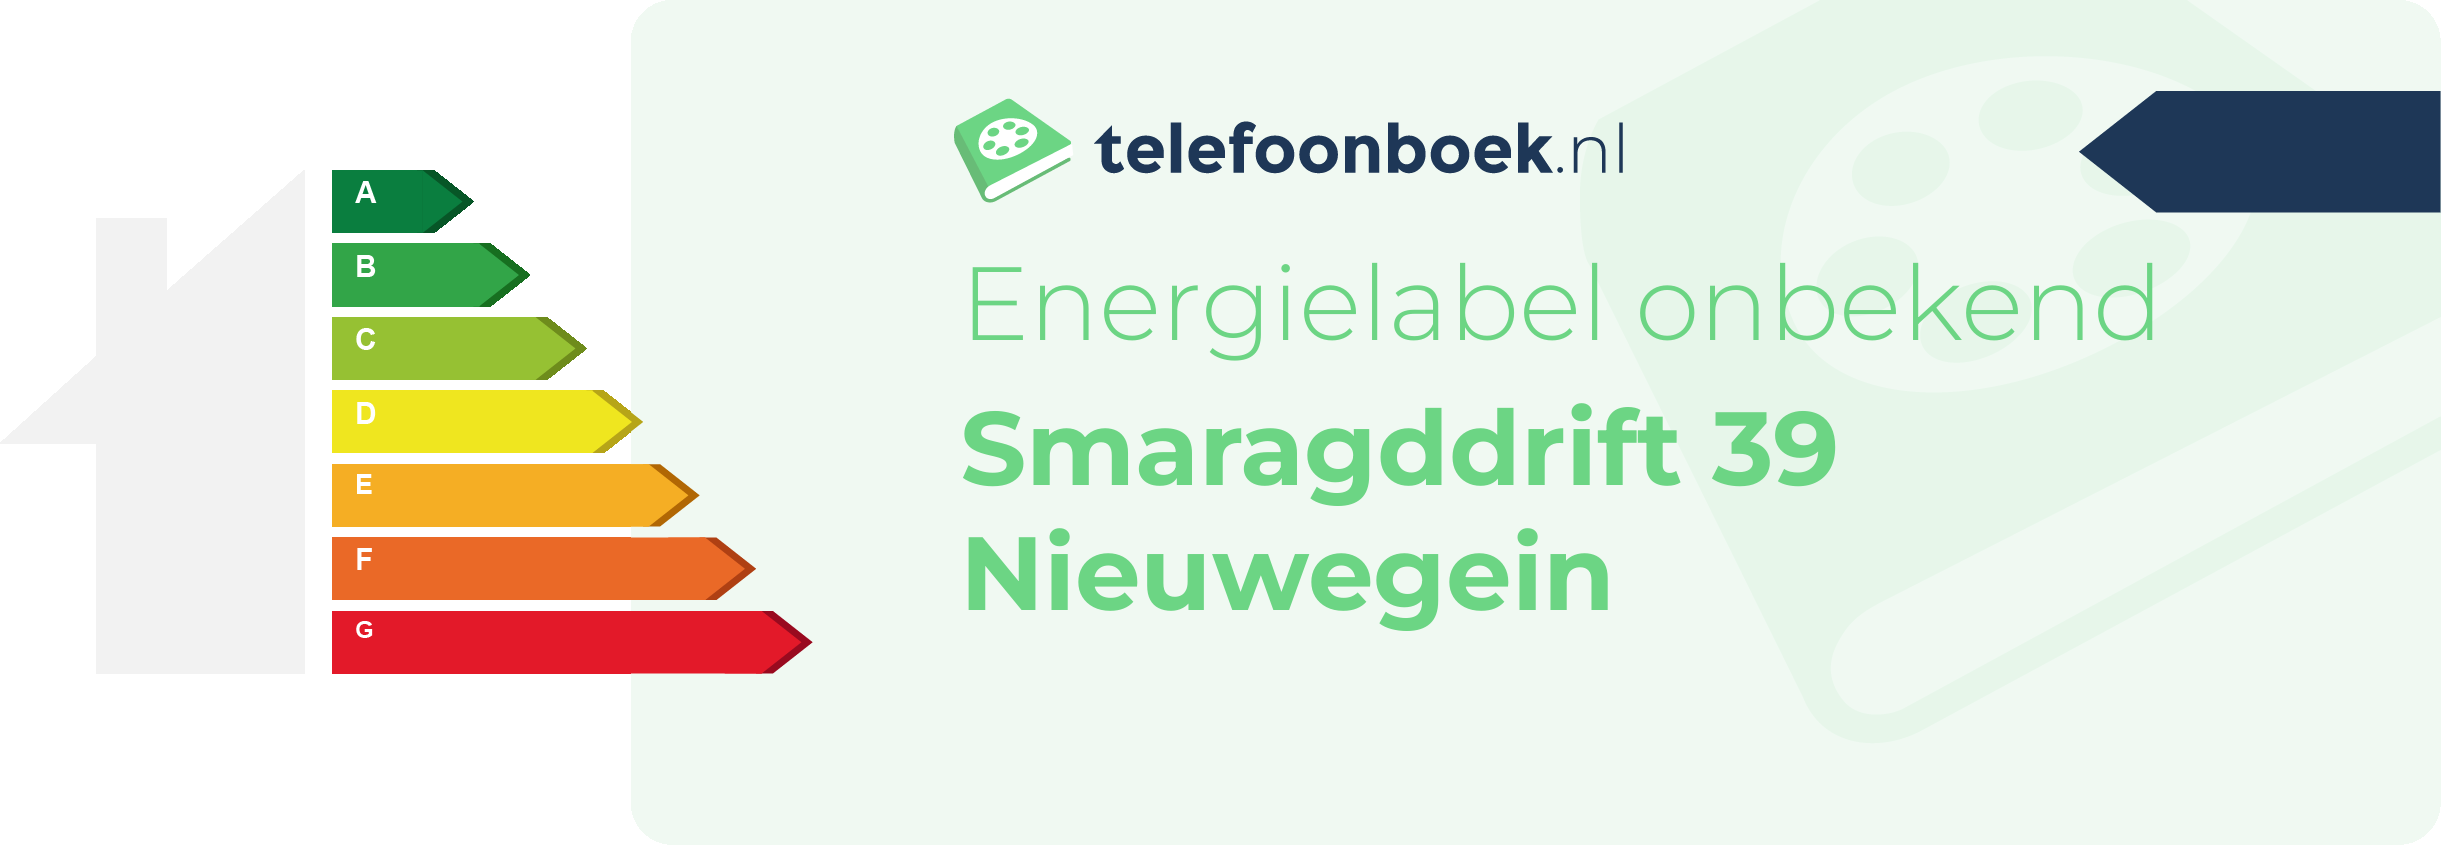 Energielabel Smaragddrift 39 Nieuwegein